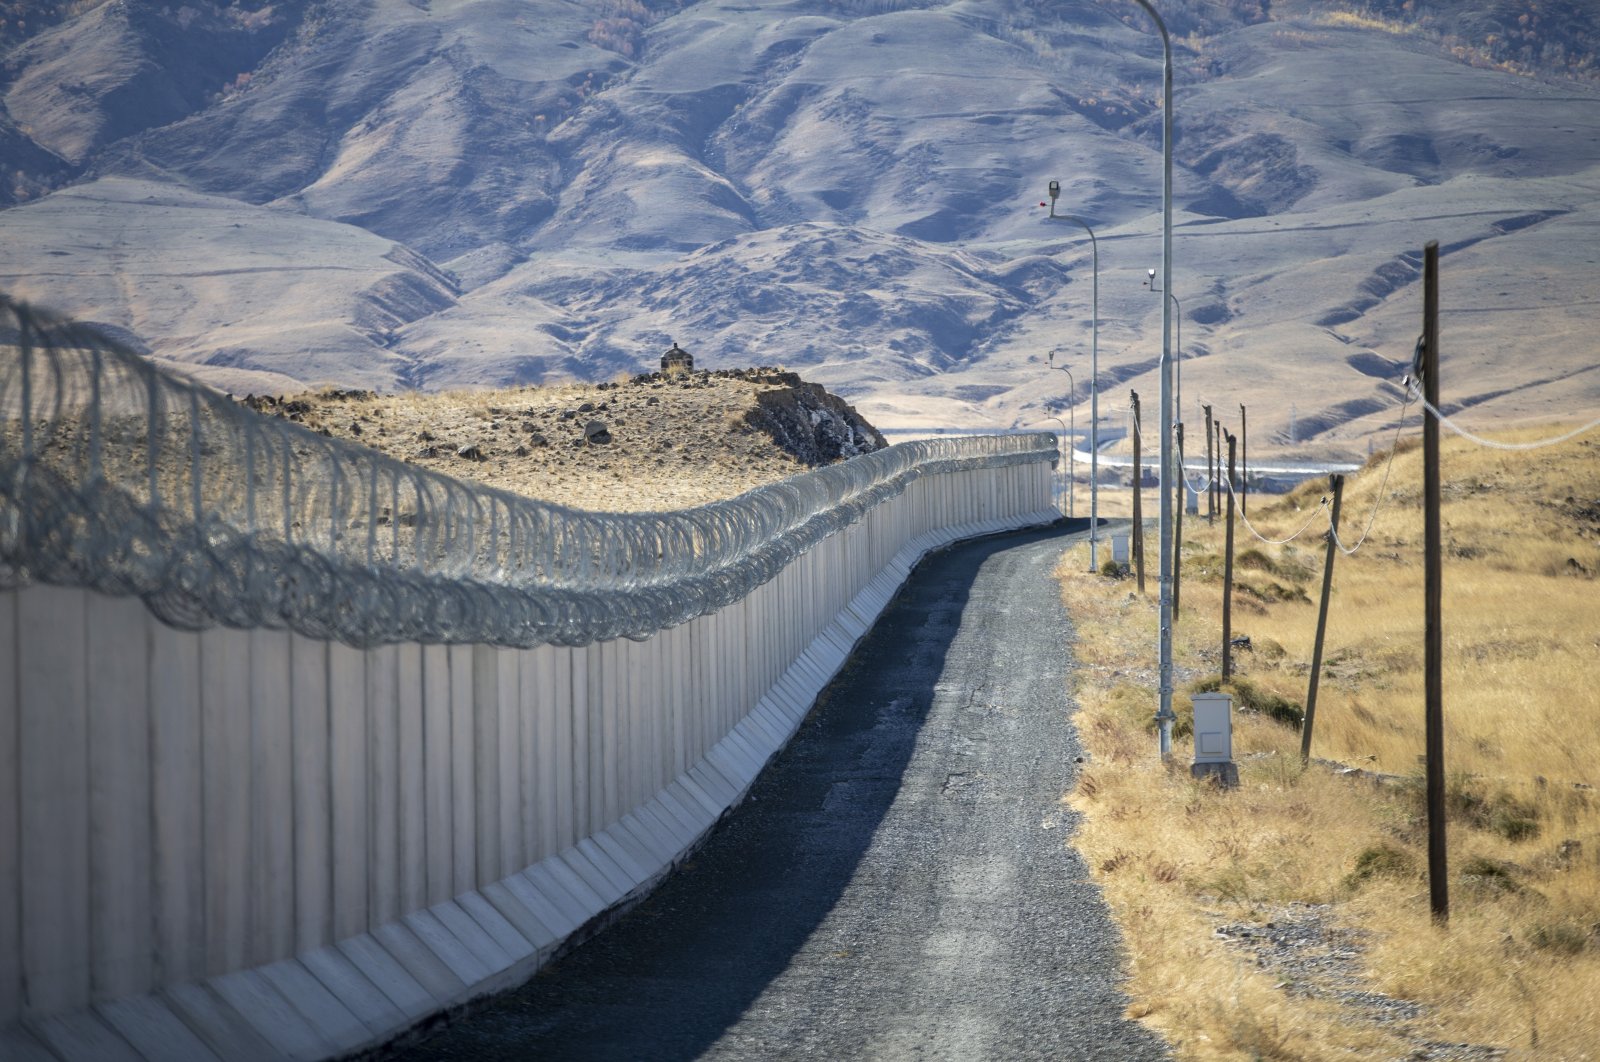 Tembok sepanjang 145 km di perbatasan timur Turki mencegah kegiatan ilegal